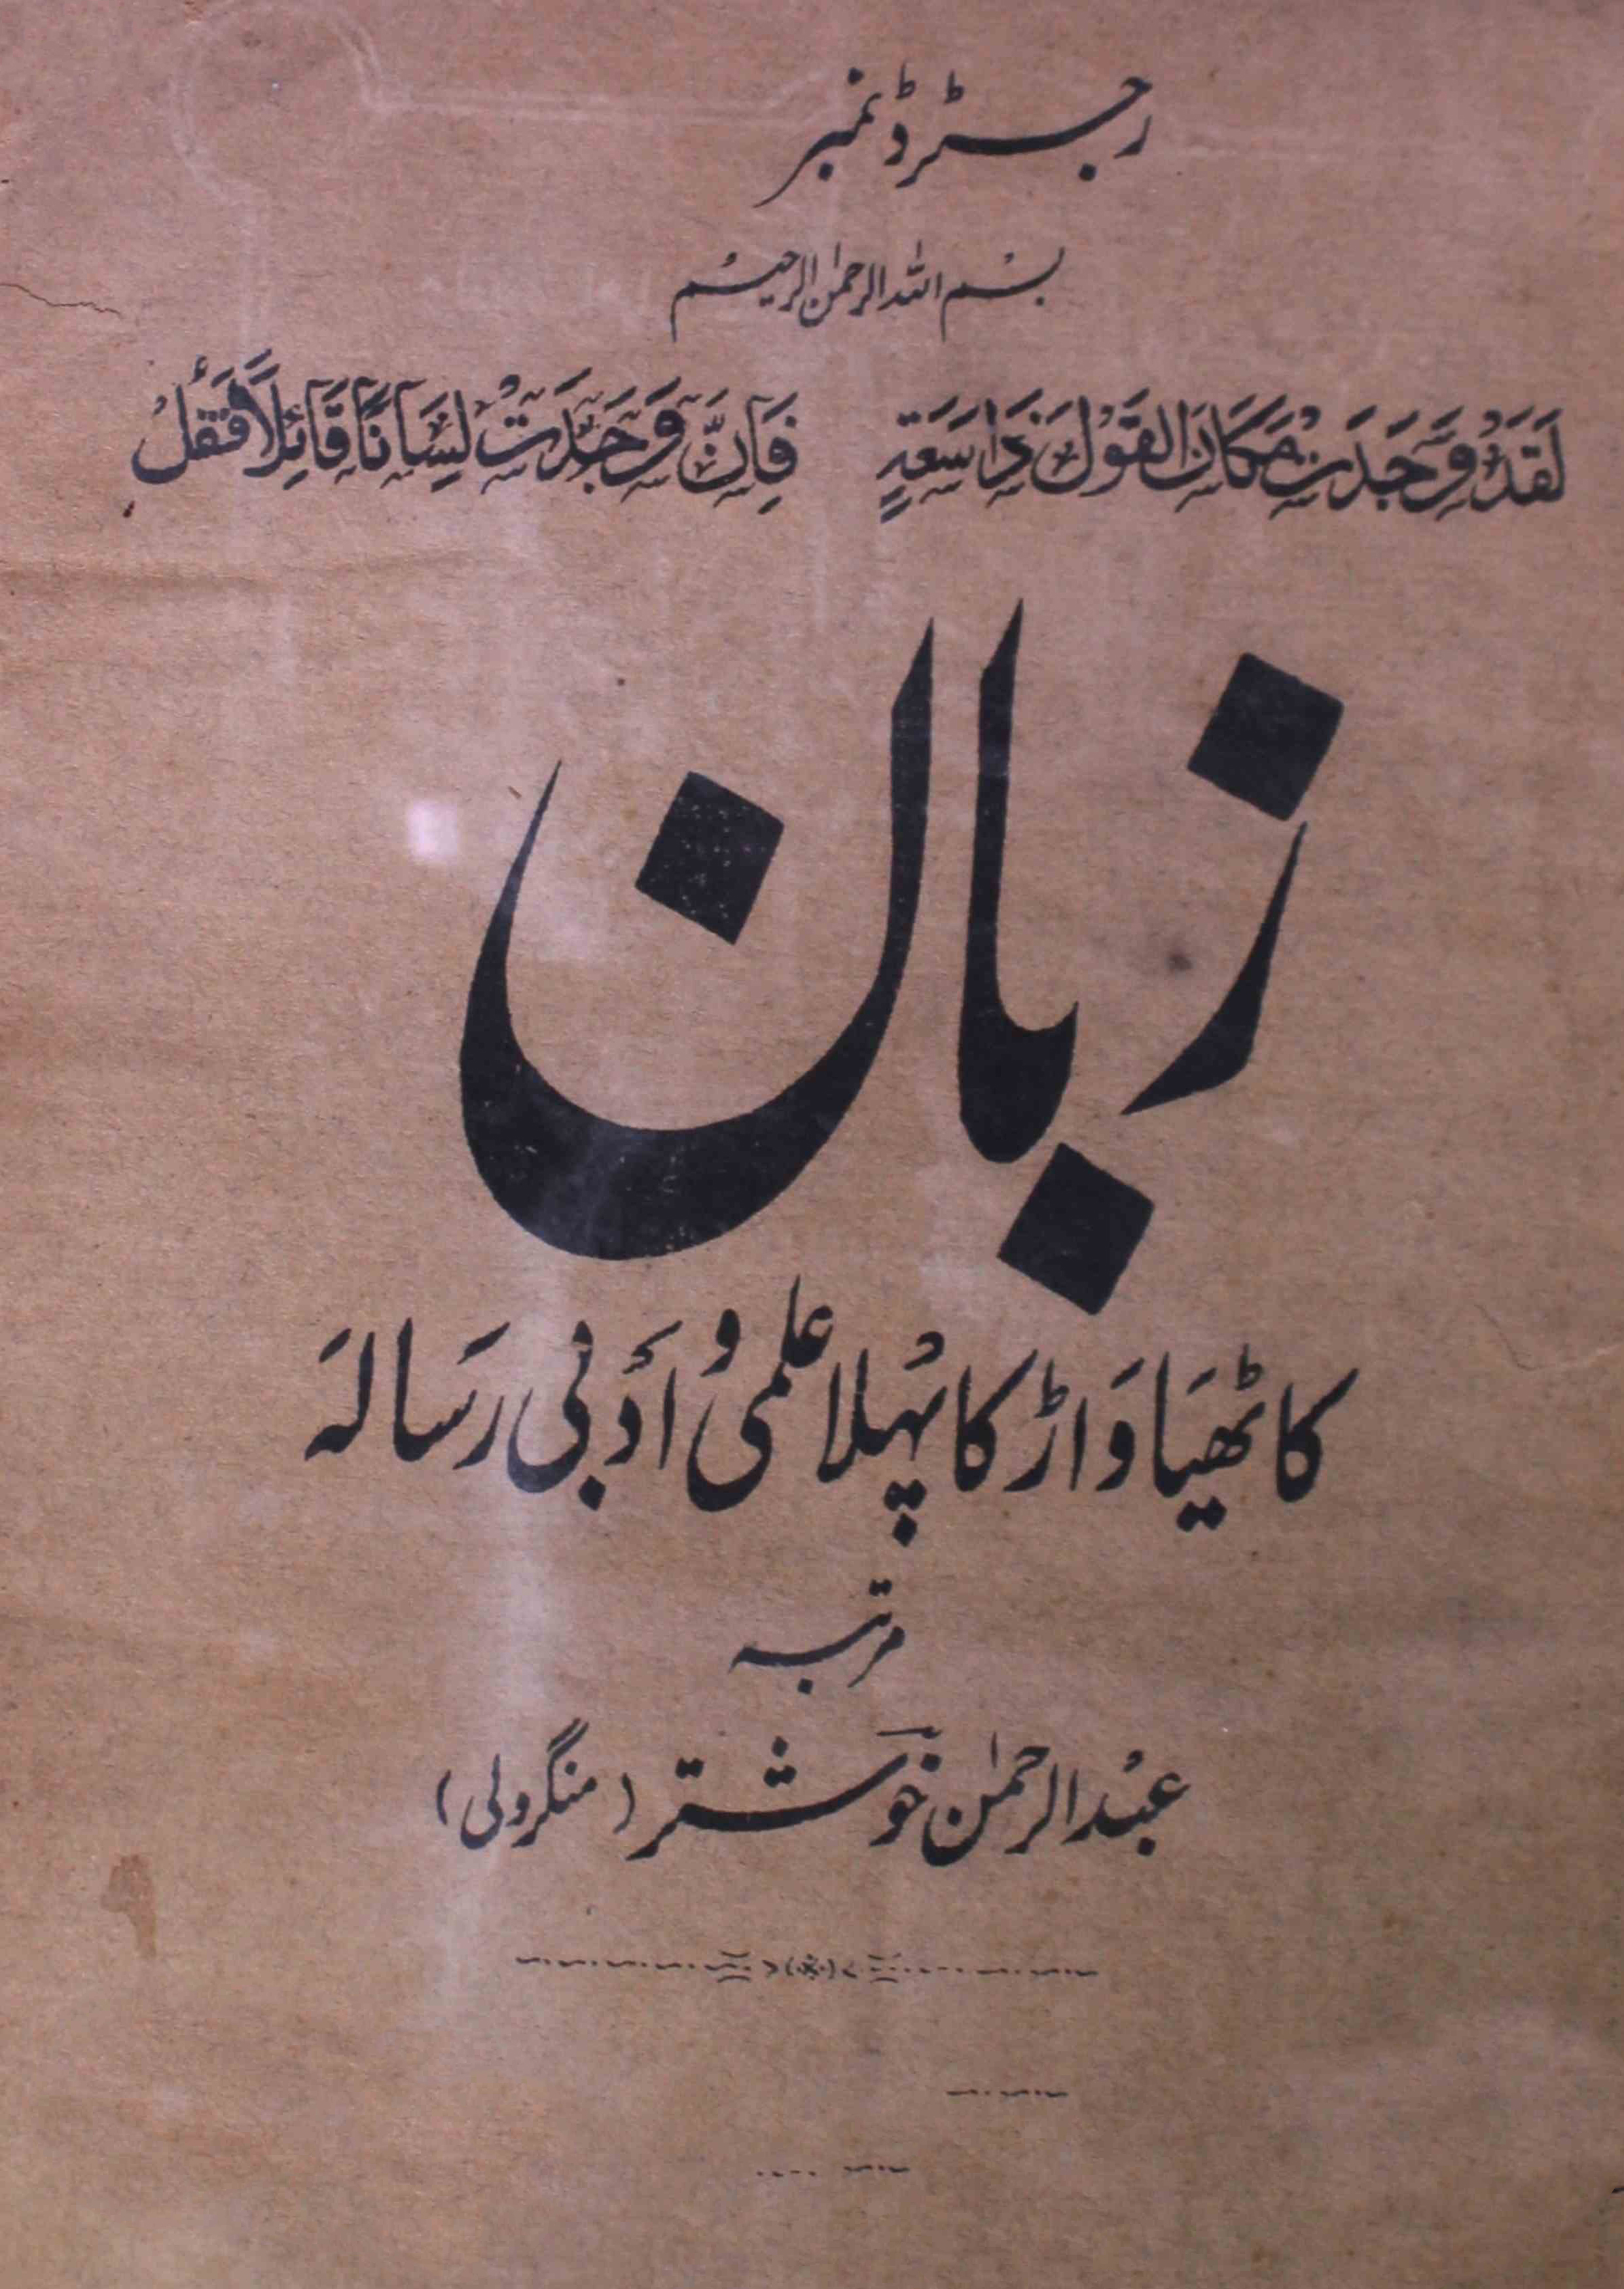 zaban-shumara-number-007-abdur-rahman-khushtar-mangroli-magazines